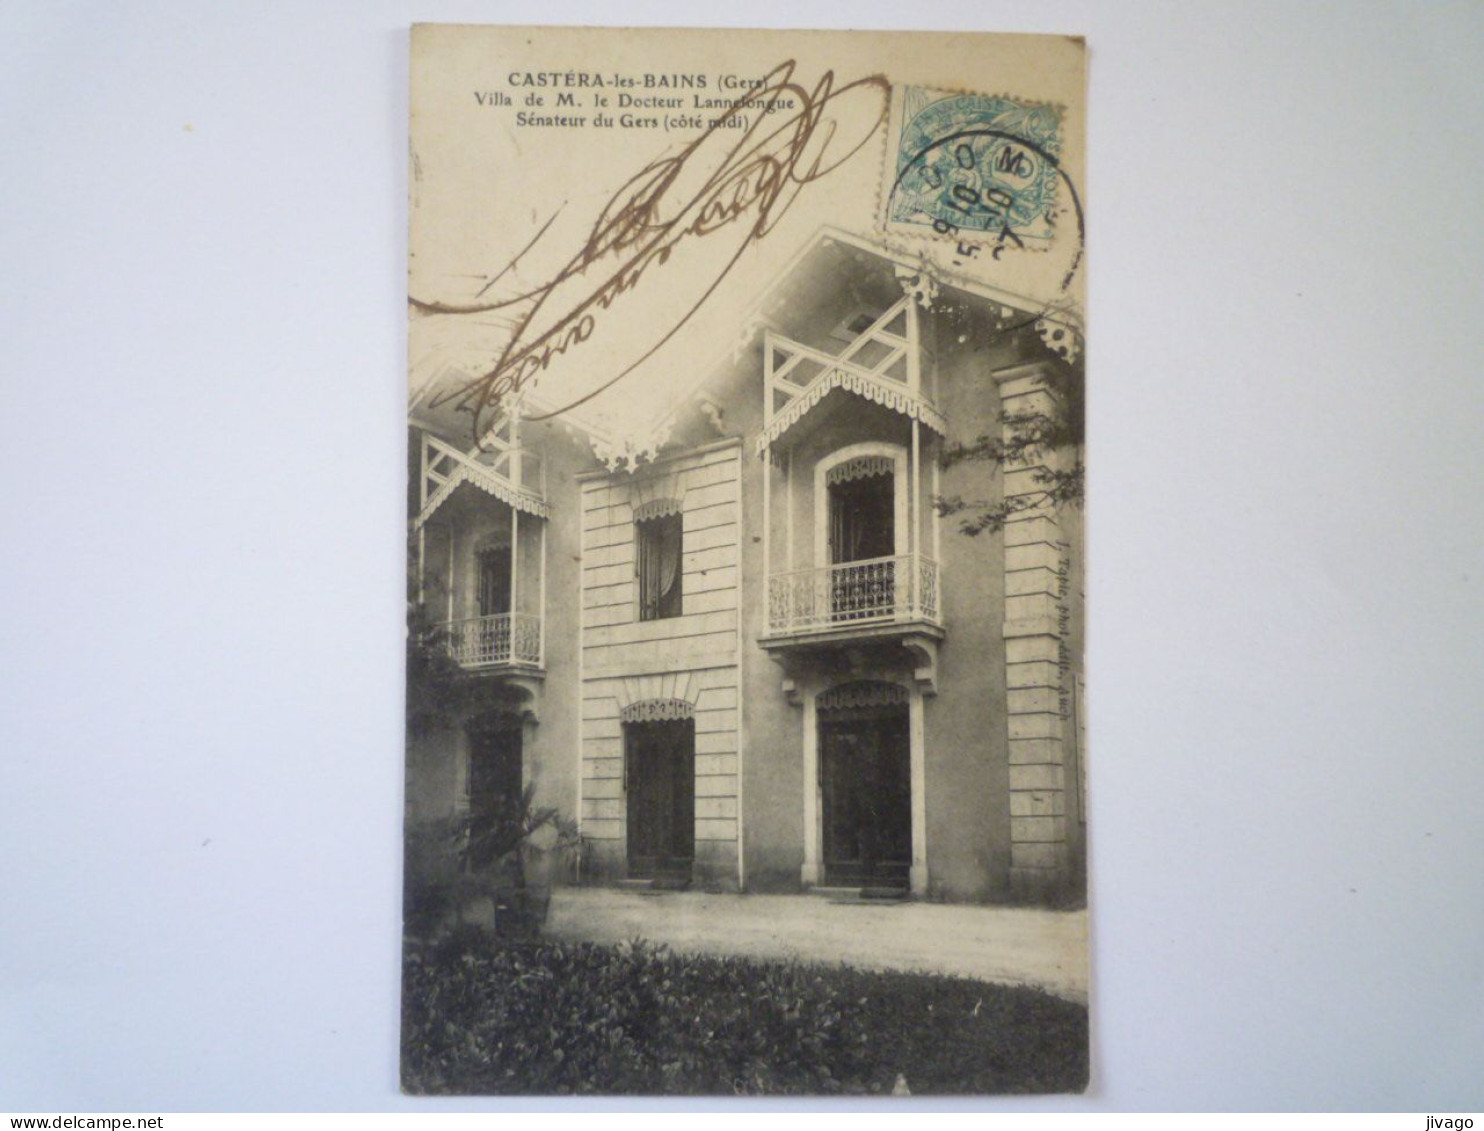 2023 - 3950  CASTERA-les-BAINS  (Gers)  :  Villa De M. Le Docteur LANNELONGUE  Sénateur Du Gers   1907   XXX - Castera